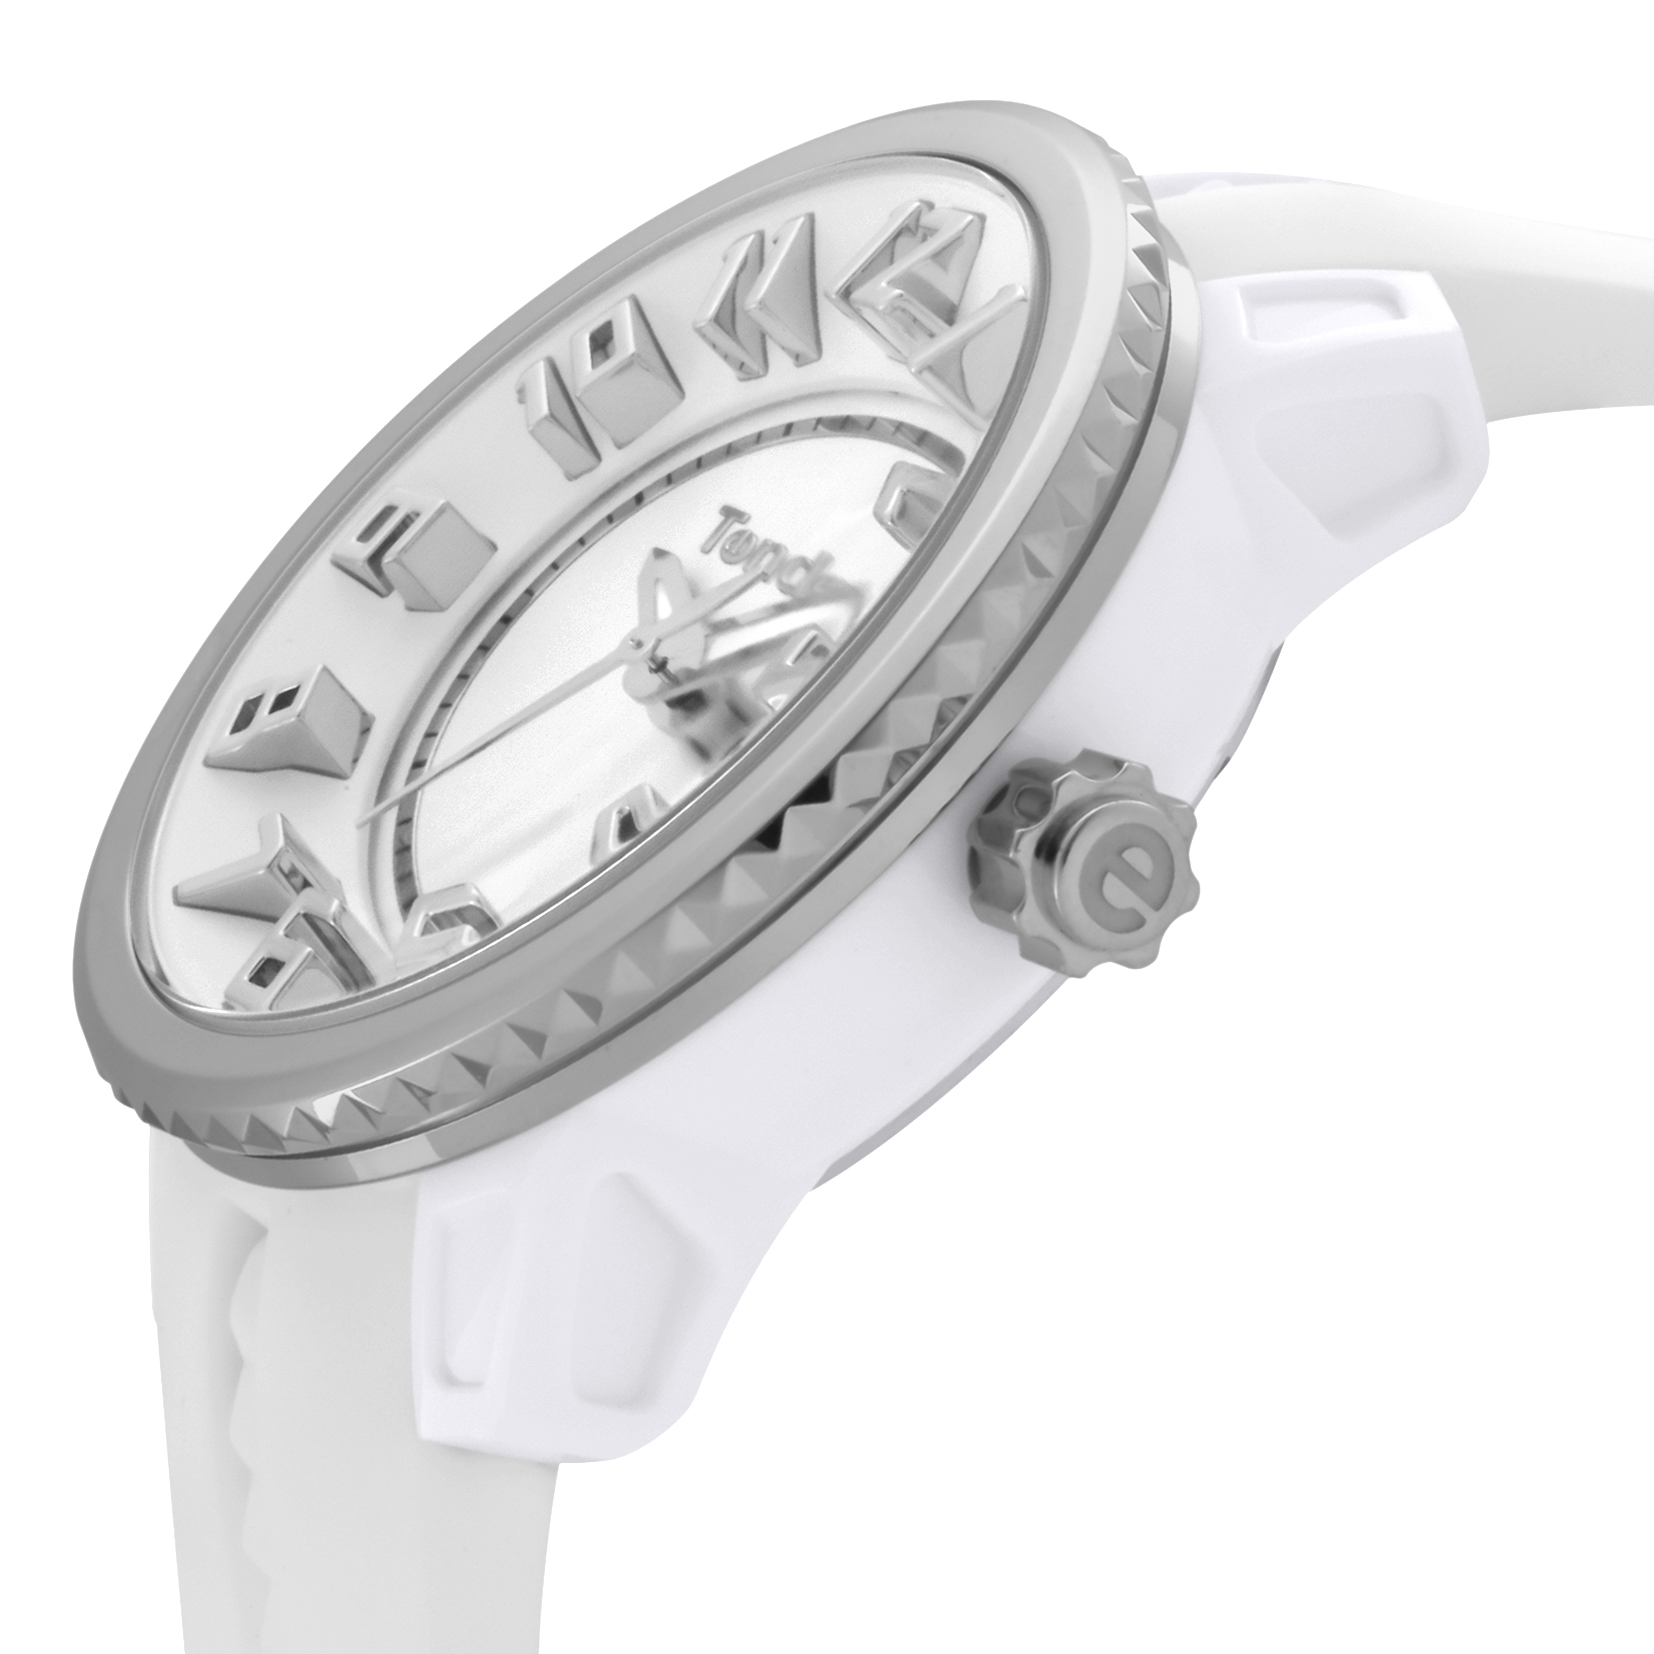 ■腕時計 ガリバーミディアム ユニセックス ホワイト